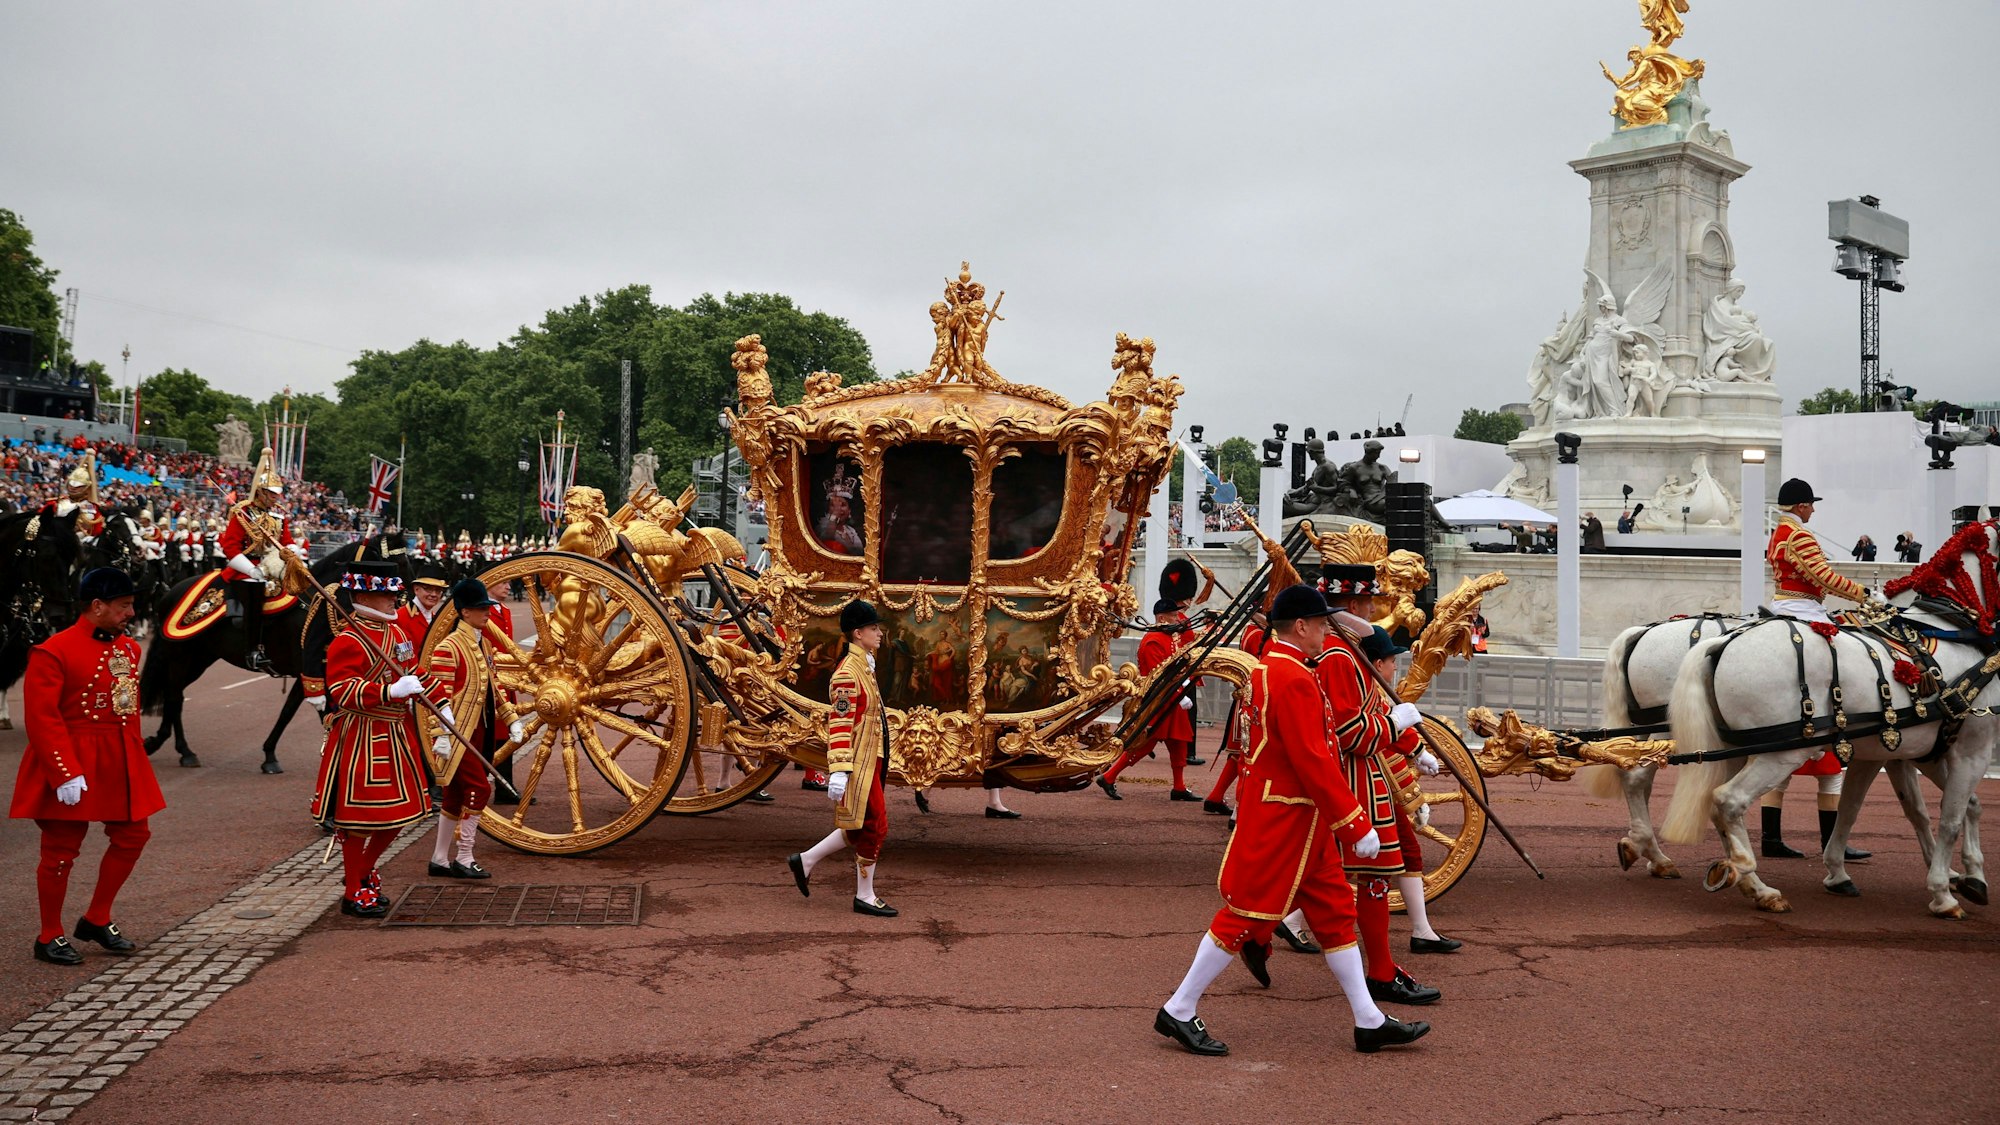 Die goldene Staatskutsche fährt während eines Festumzuges am vierten Tag der Feierlichkeiten zum Platinjubiläum der Queen vor dem Buckingham Palace vorbei. Der Festumzug ist ein Karnevalsumzug auf der Mall mit riesigen Puppen und Prominenten, die Schlüsselmomente aus den sieben Jahrzehnten der Thronbesteigung von Königin Elizabeth II. darstellen. +++ dpa-Bildfunk +++